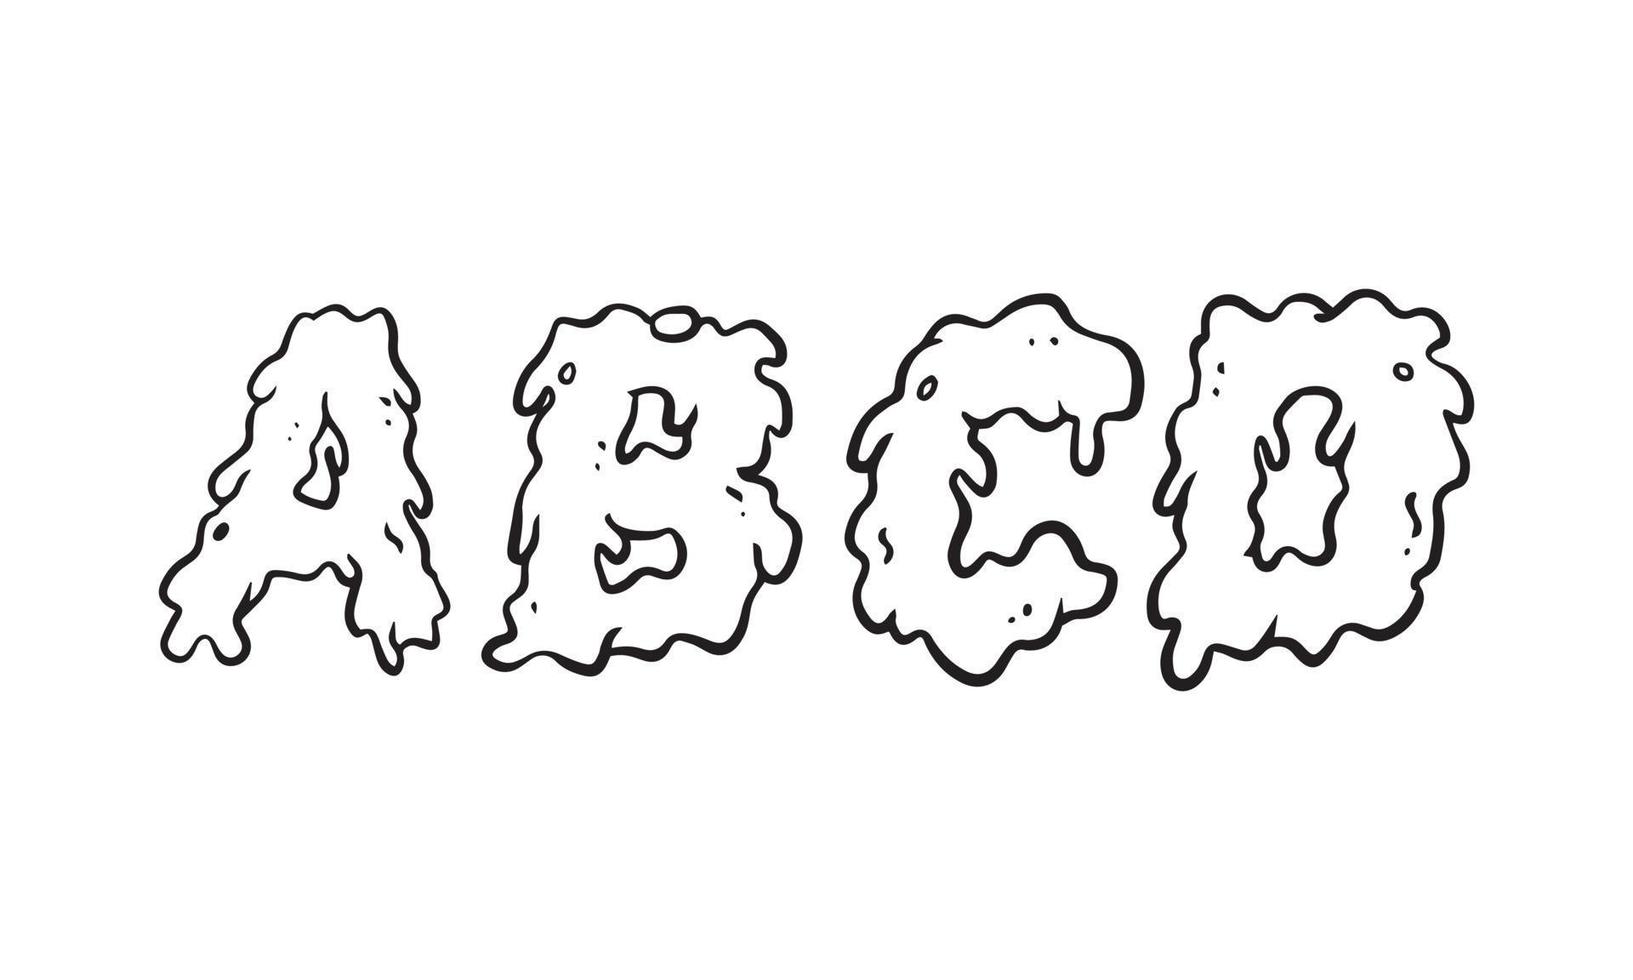 fusión de la ilustración del alfabeto, efecto de texto de arte de la suciedad para el diseño, fuente de vector dibujado a mano con fondo aislado